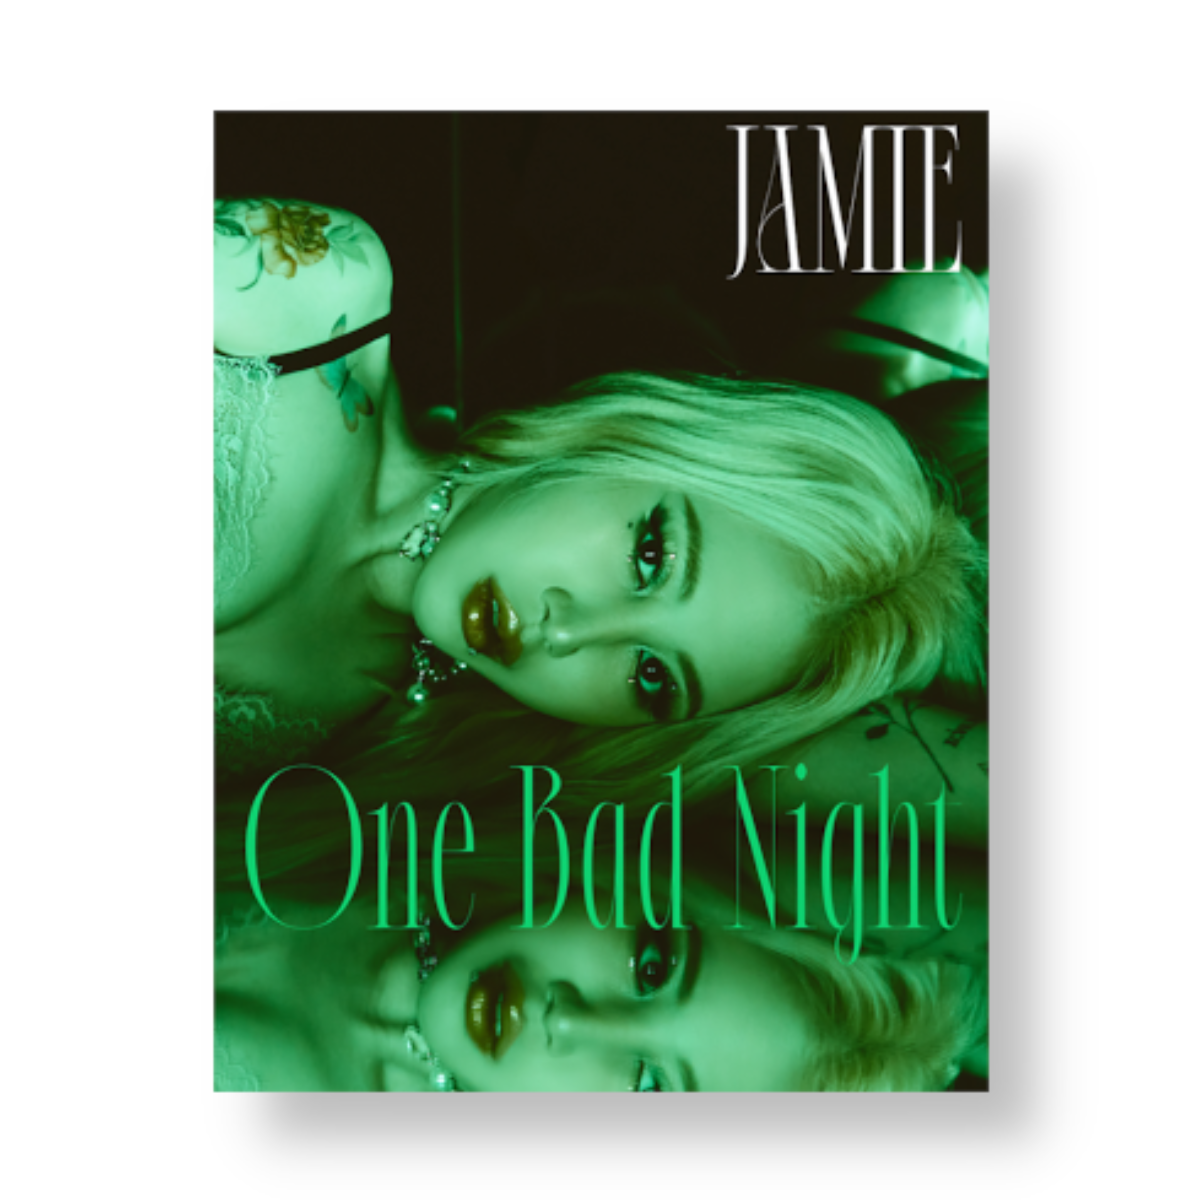 JAMIE EP Album Vol. 1 - One Bad Night